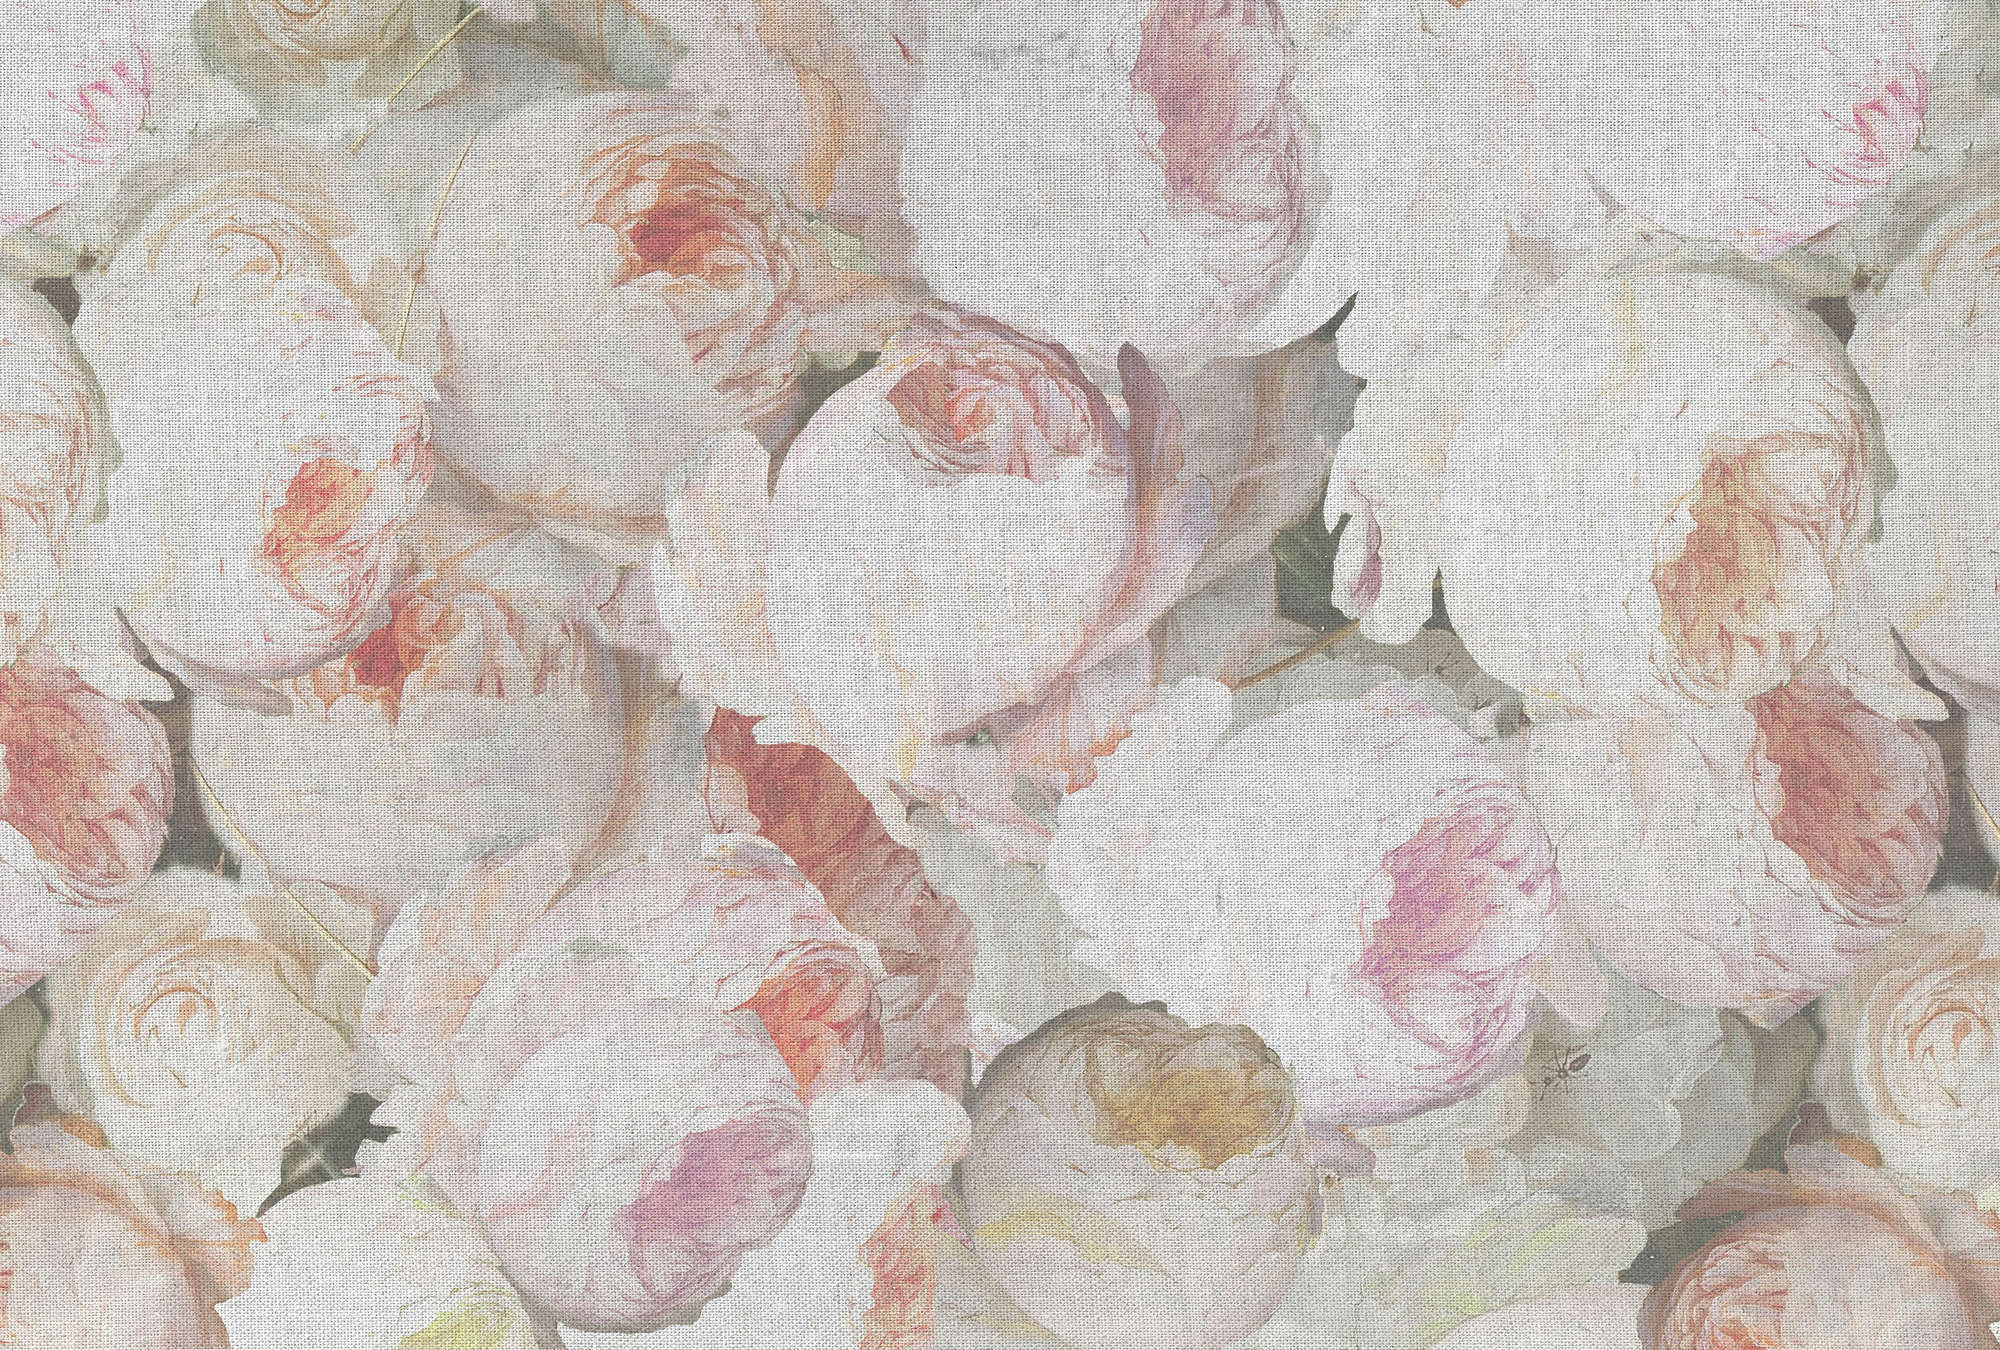             Papel Pintado Rosas con Flores y Lino Óptico - Rosa, Blanco
        